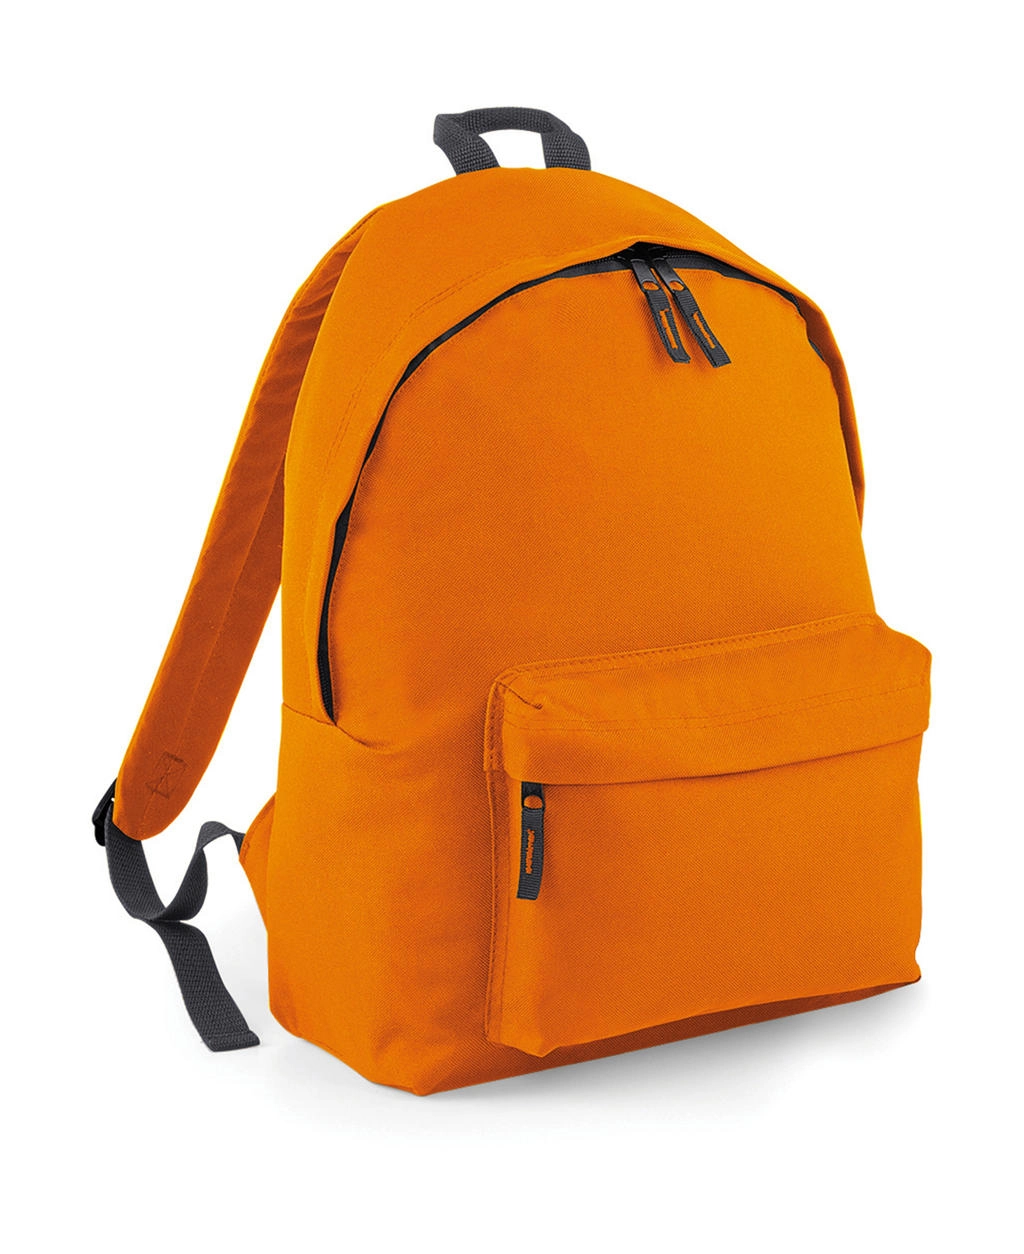 Original Fashion Backpack zum Besticken und Bedrucken in der Farbe Orange/Graphite Grey mit Ihren Logo, Schriftzug oder Motiv.